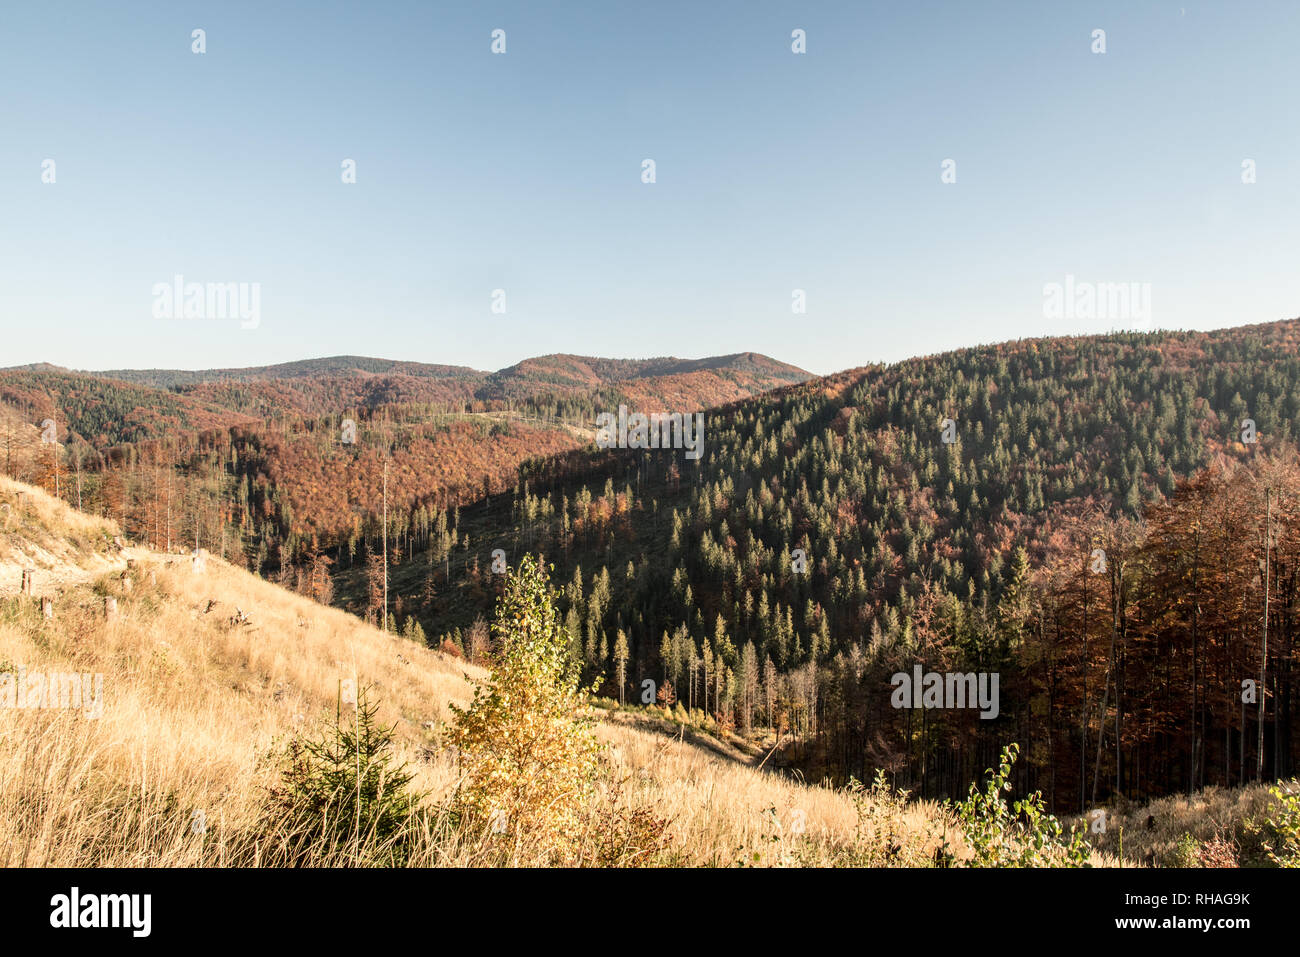 Autunno Beskid Zywiecki montagne sul polacco - terra di confine slovacco con colline coperte da foreste colorate e cielo chiaro dal sentiero escursionistico bellow Wielka Foto Stock